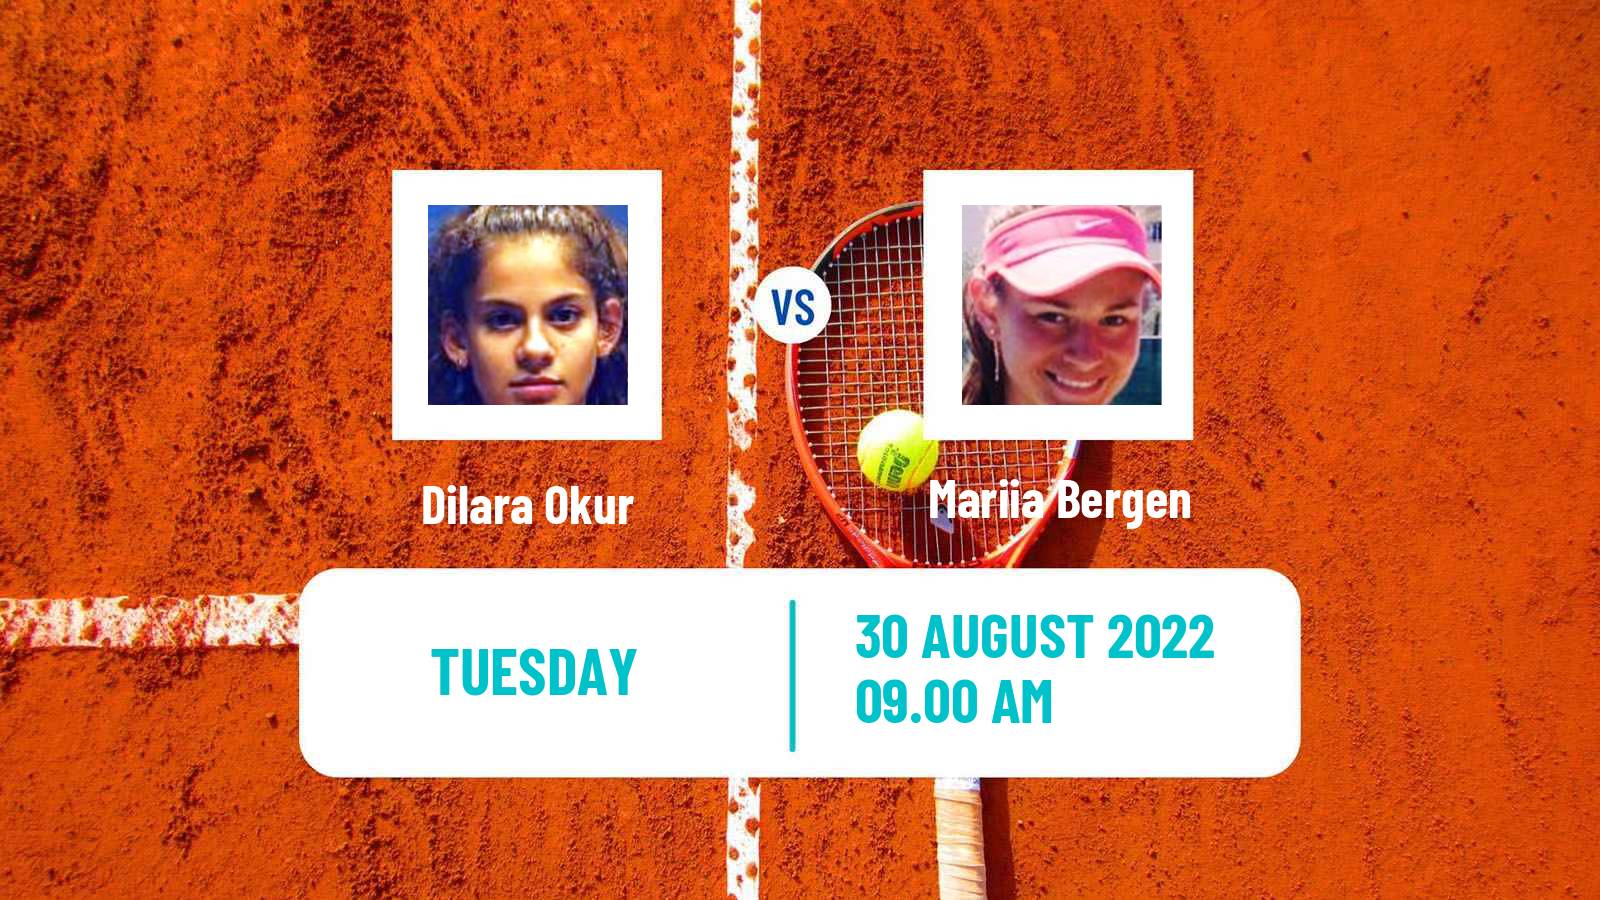 Tennis ITF Tournaments Dilara Okur - Mariia Bergen